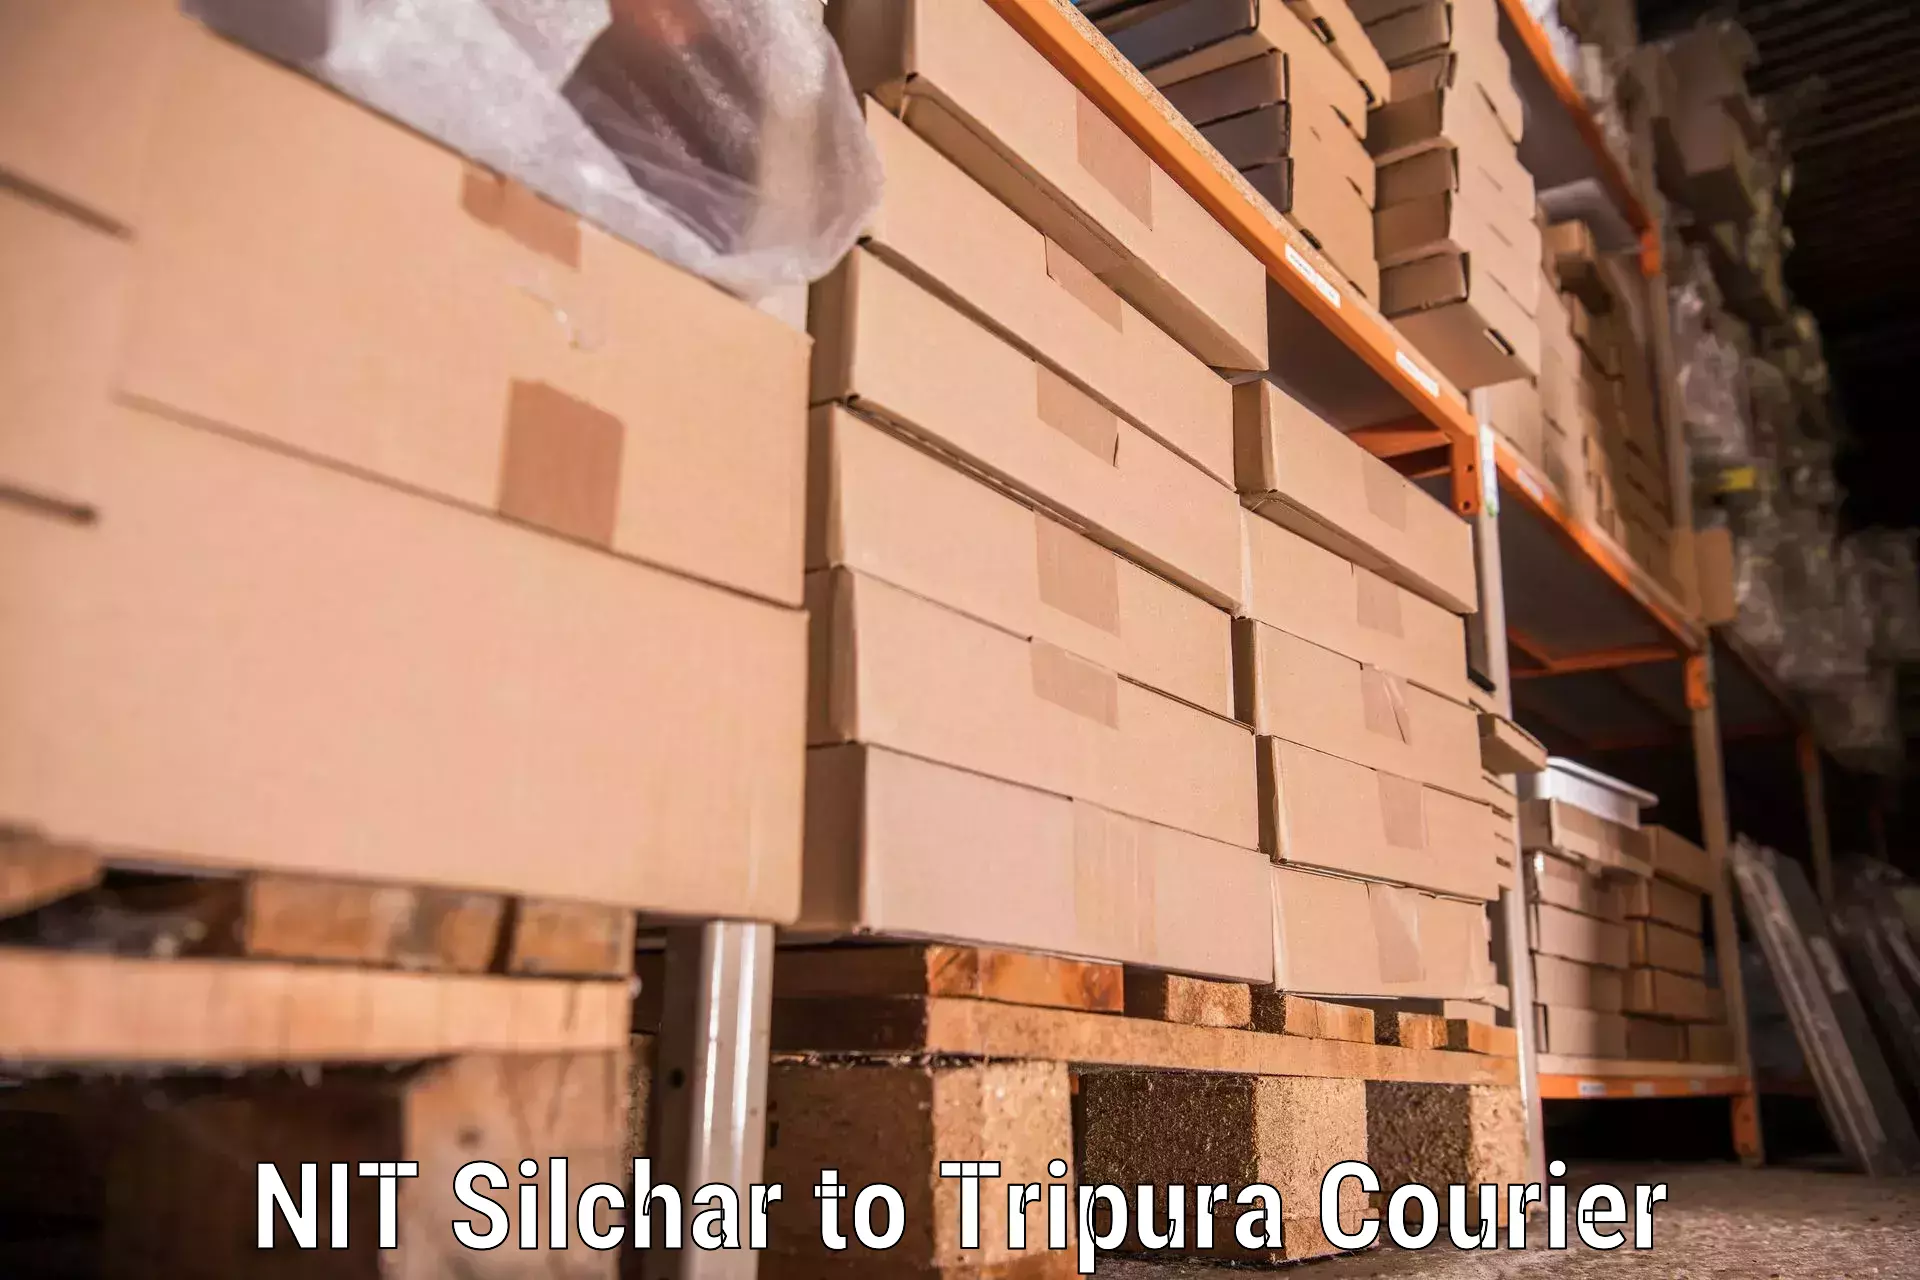 Efficient relocation services NIT Silchar to Bishalgarh